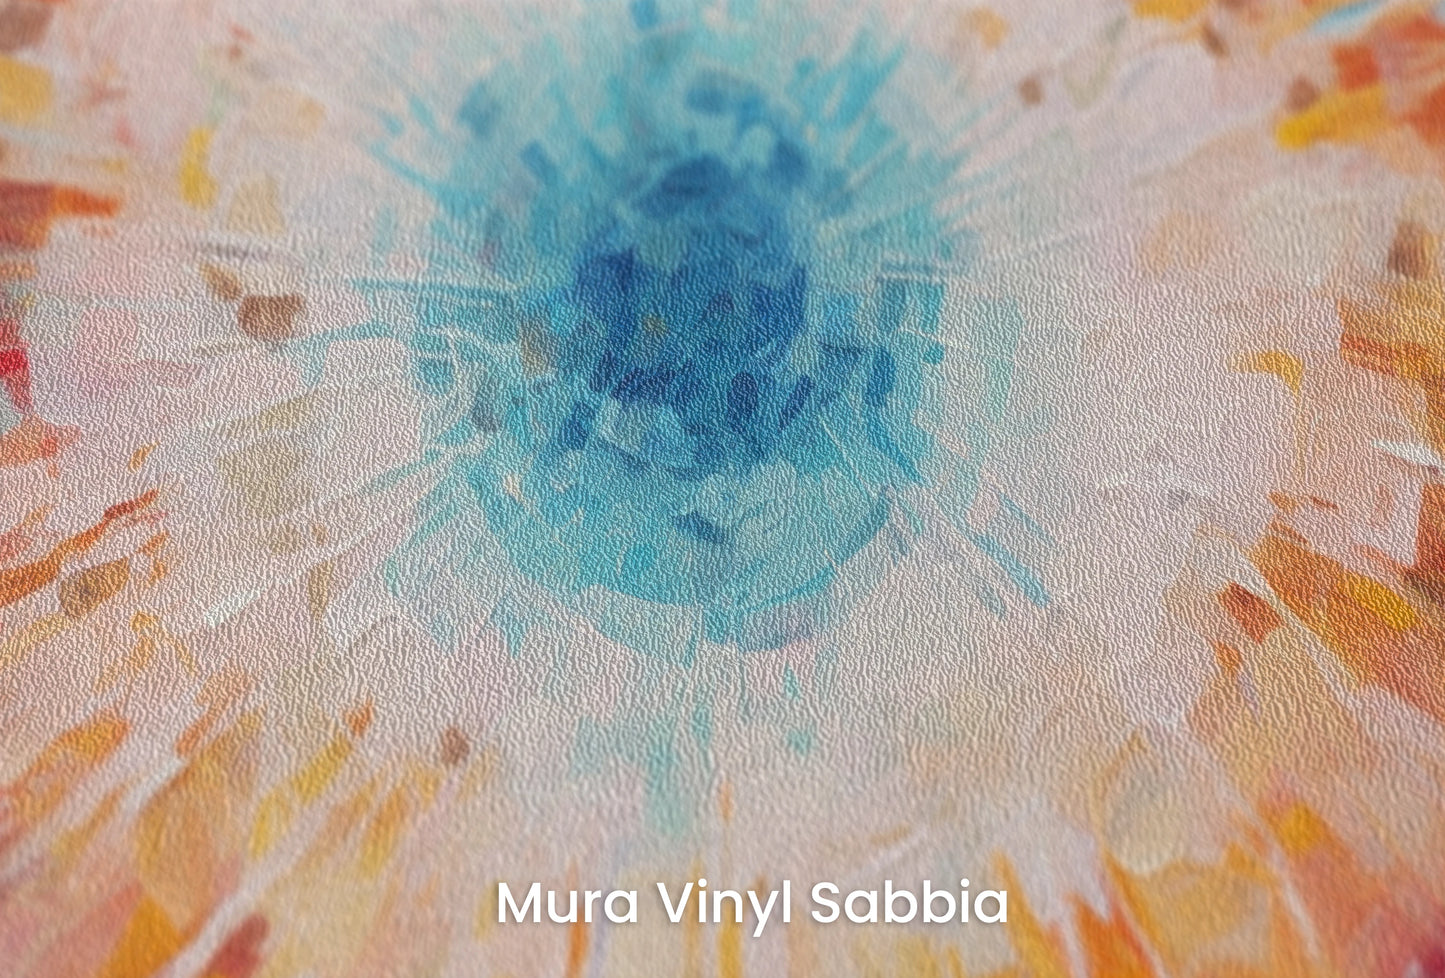 Zbliżenie na artystyczną fototapetę o nazwie Vibrant Mosaic na podłożu Mura Vinyl Sabbia struktura grubego ziarna piasku.